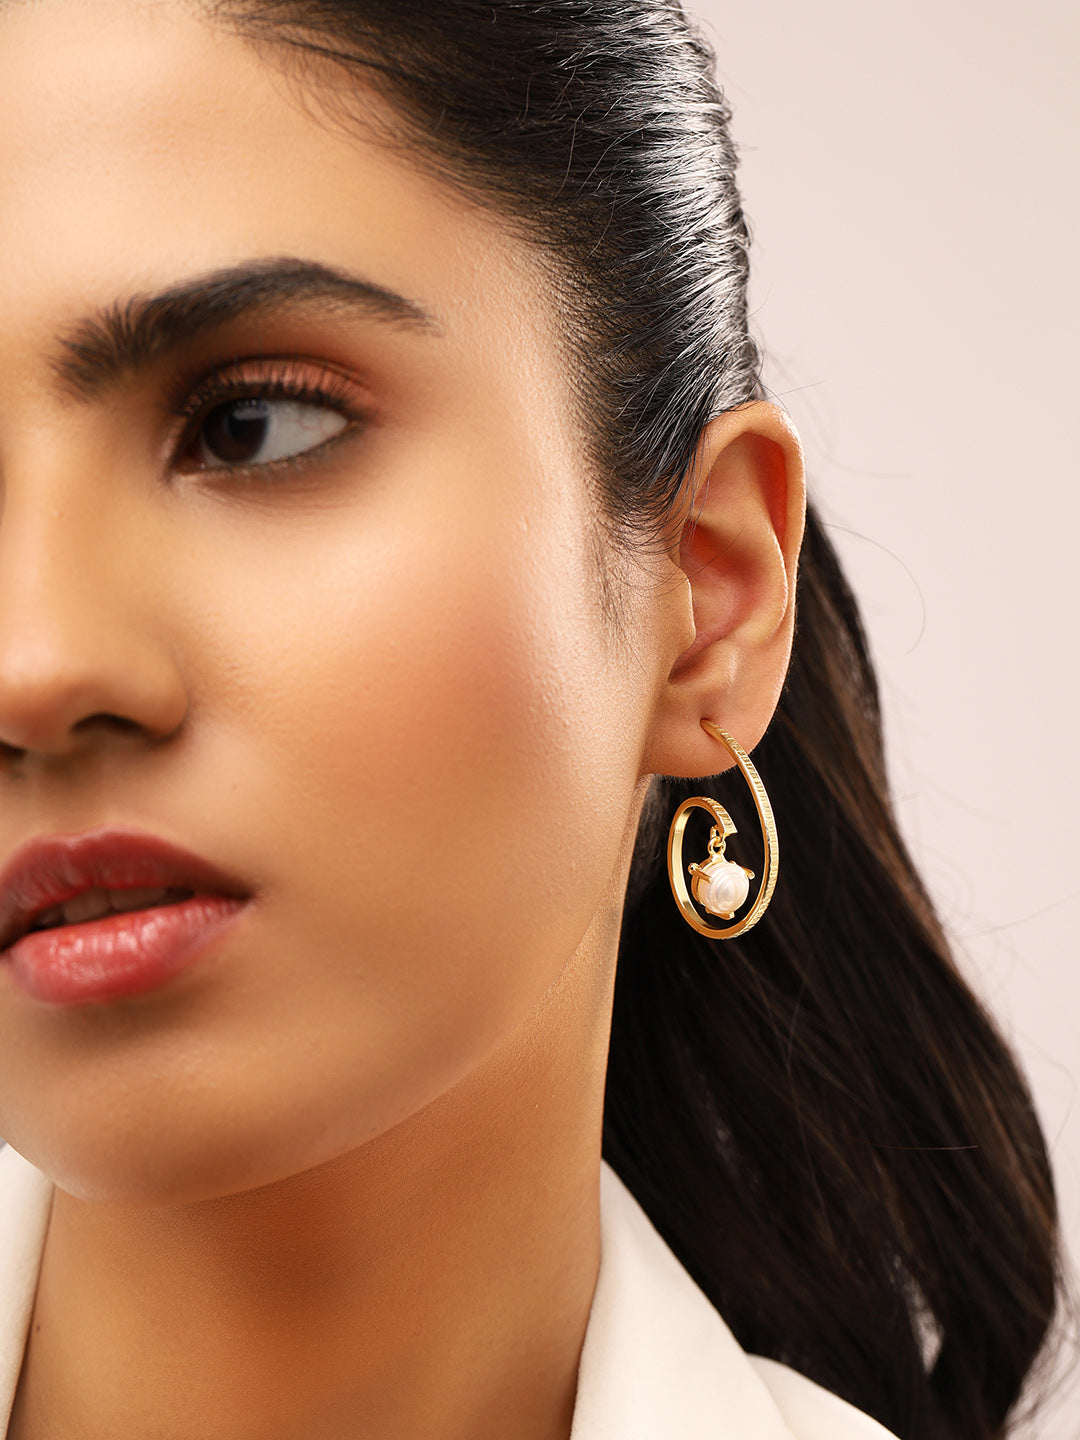 Priyaasi Gold Plated Pearl Hoop Earrings